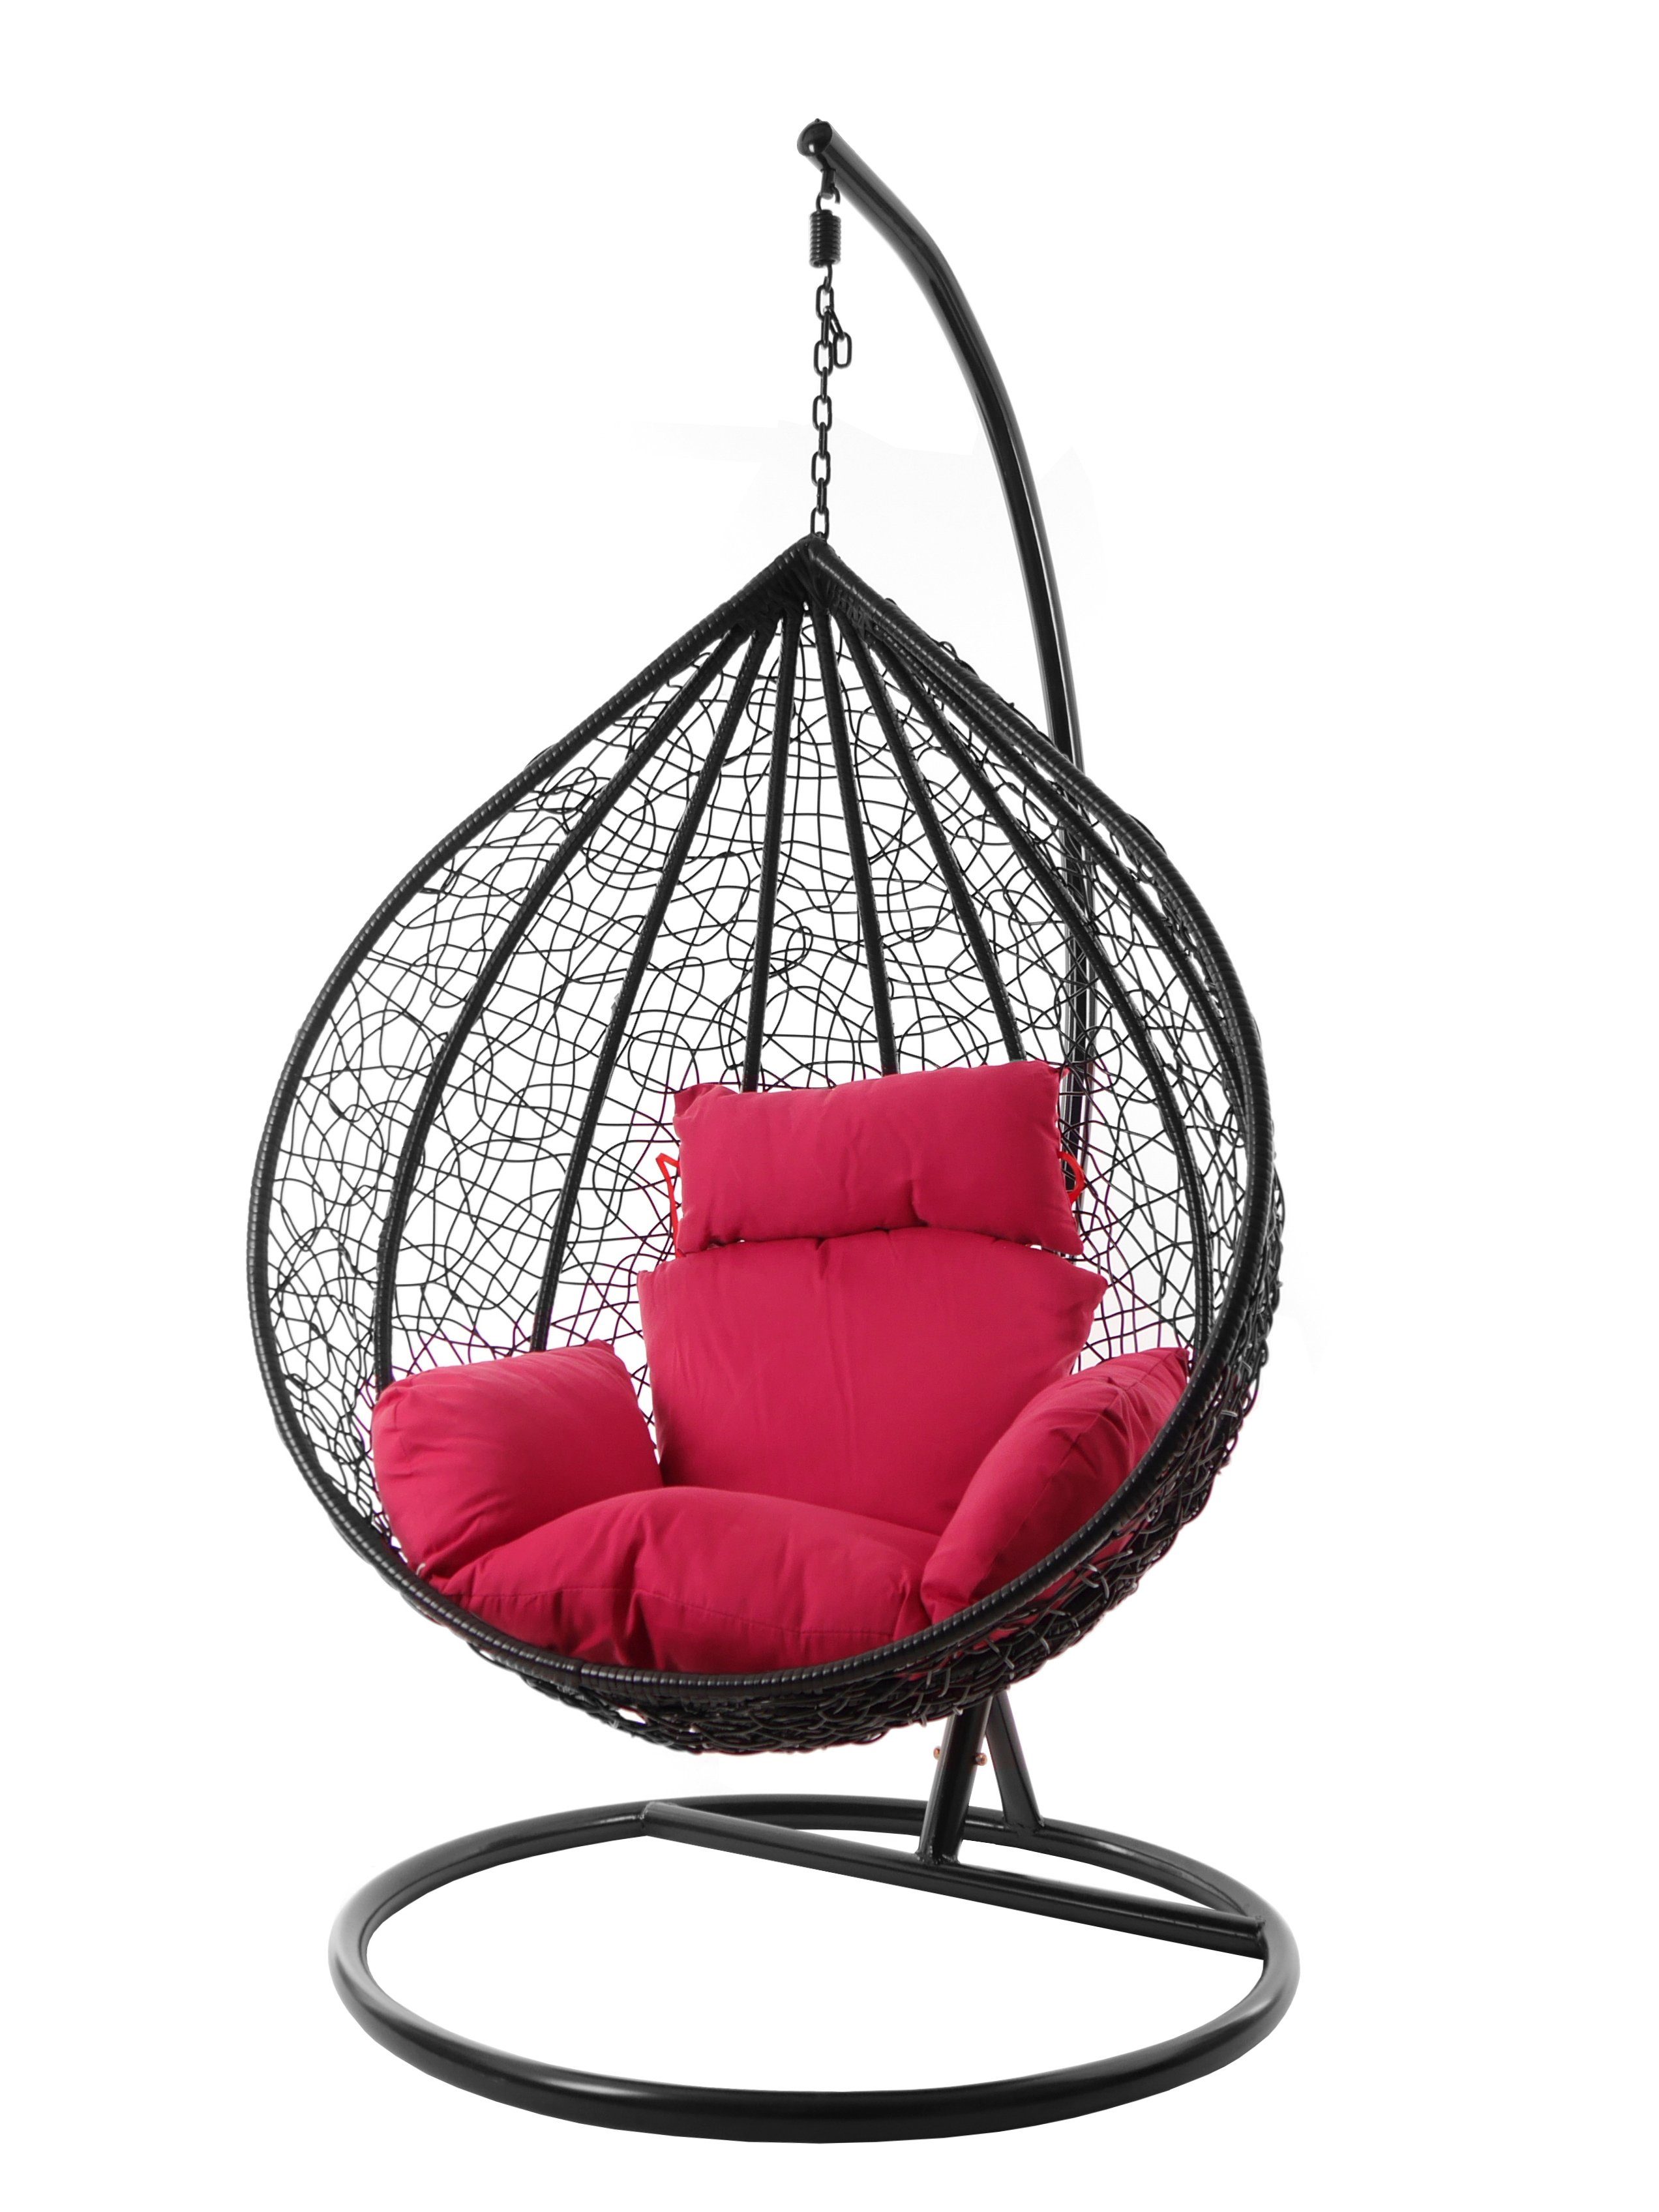 KIDEO Hängesessel Hängesessel MANACOR (3333 pink pink) Gestell schwarz, XXL edel, Swing hot Farben Nest-Kissen, inklusive, Kissen und Chair, verschiedene